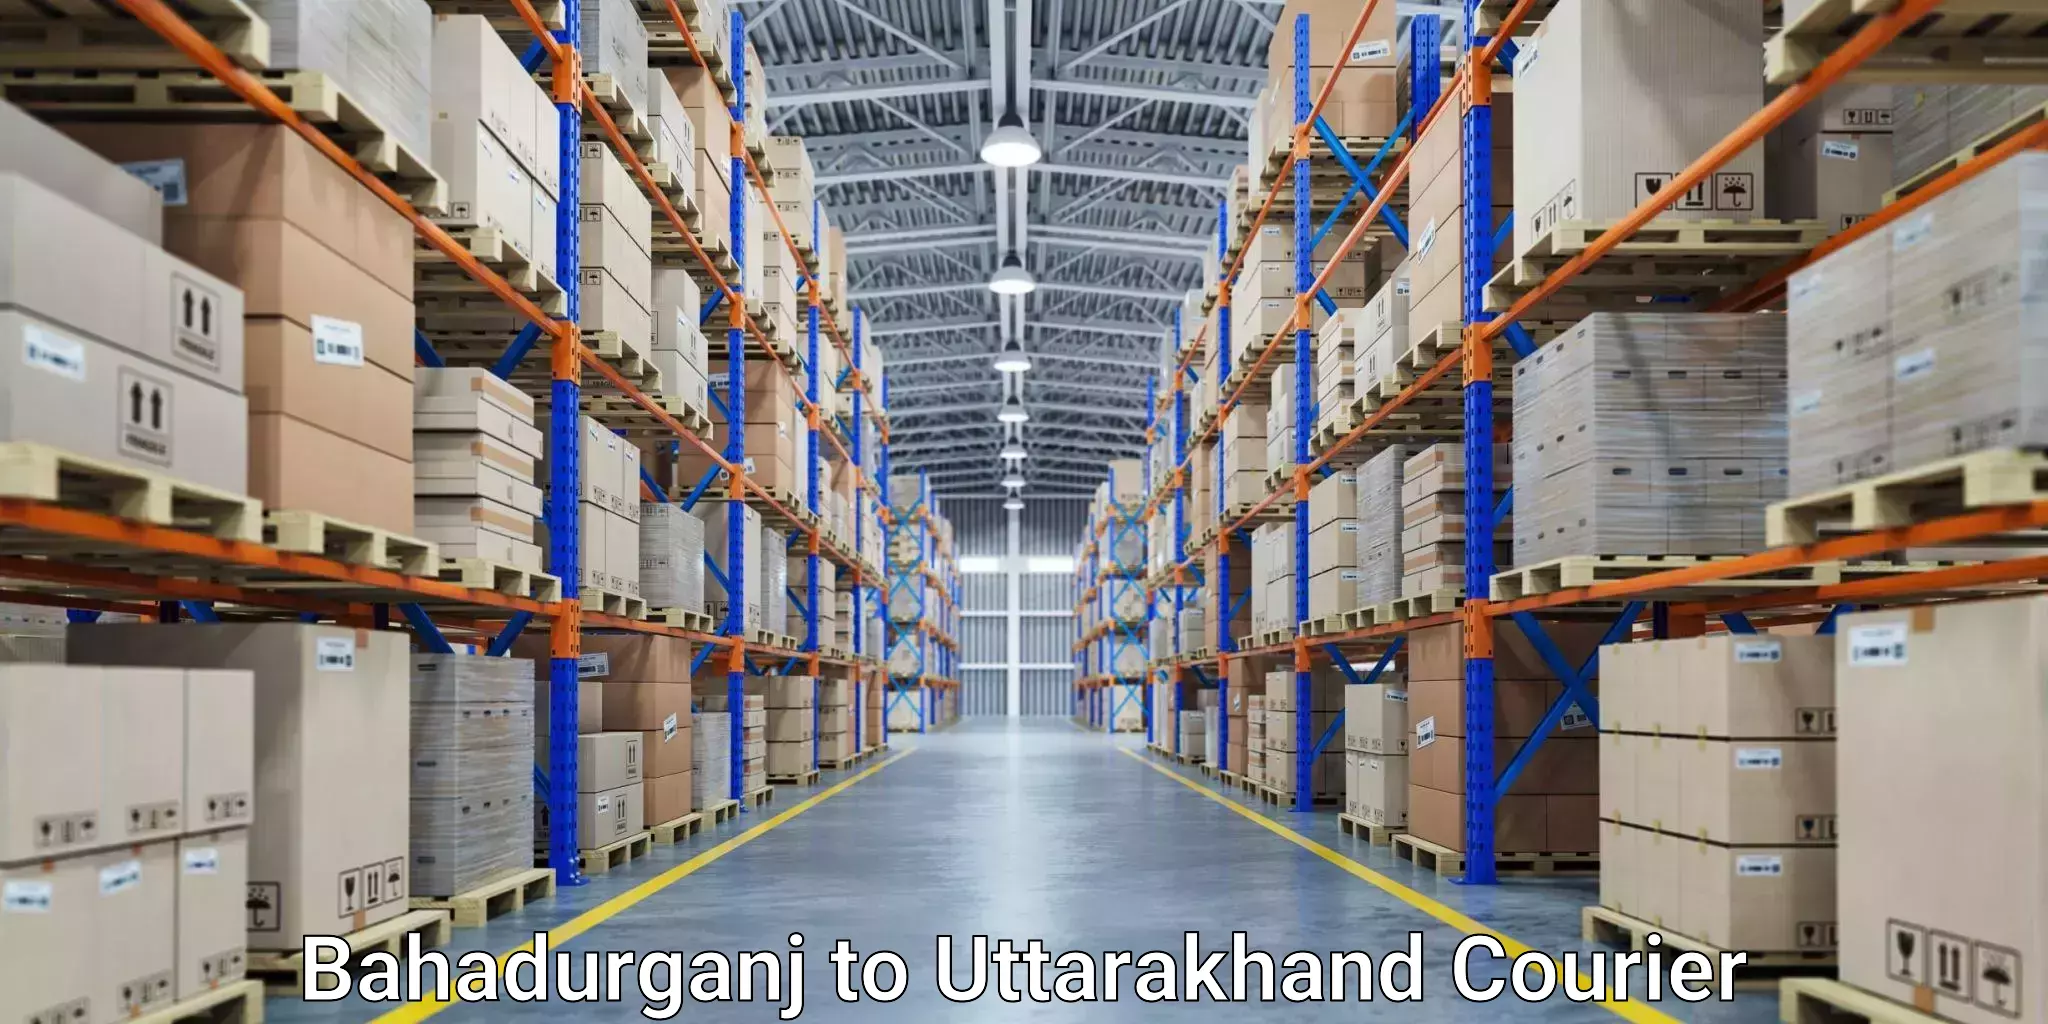 High-capacity parcel service Bahadurganj to Uttarakhand